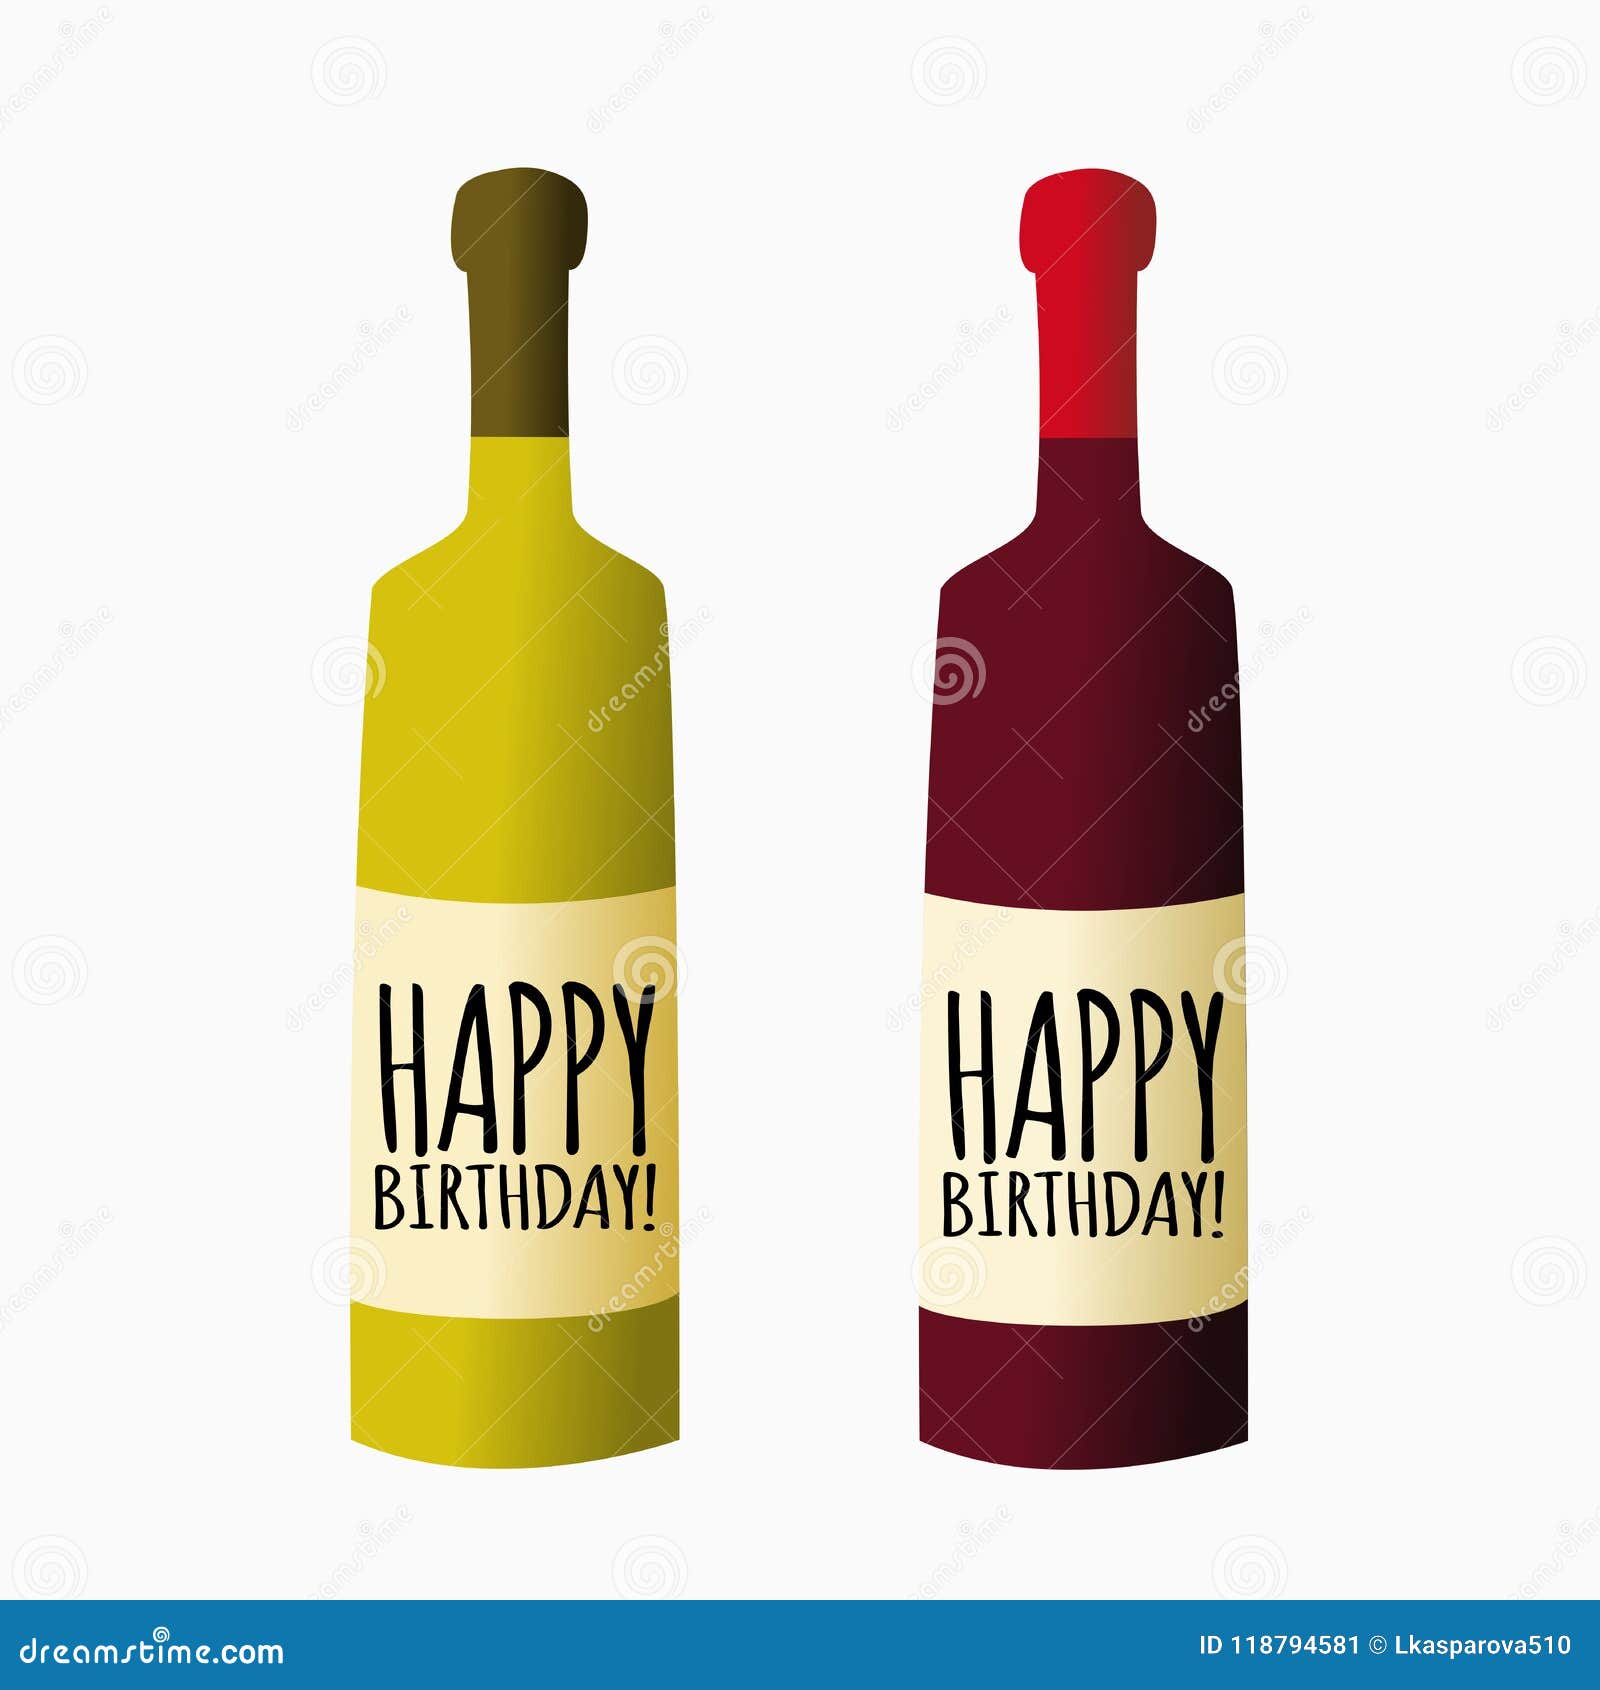 Download Vector Bottle Of Wine, Happy Birthday Stock Vector ...